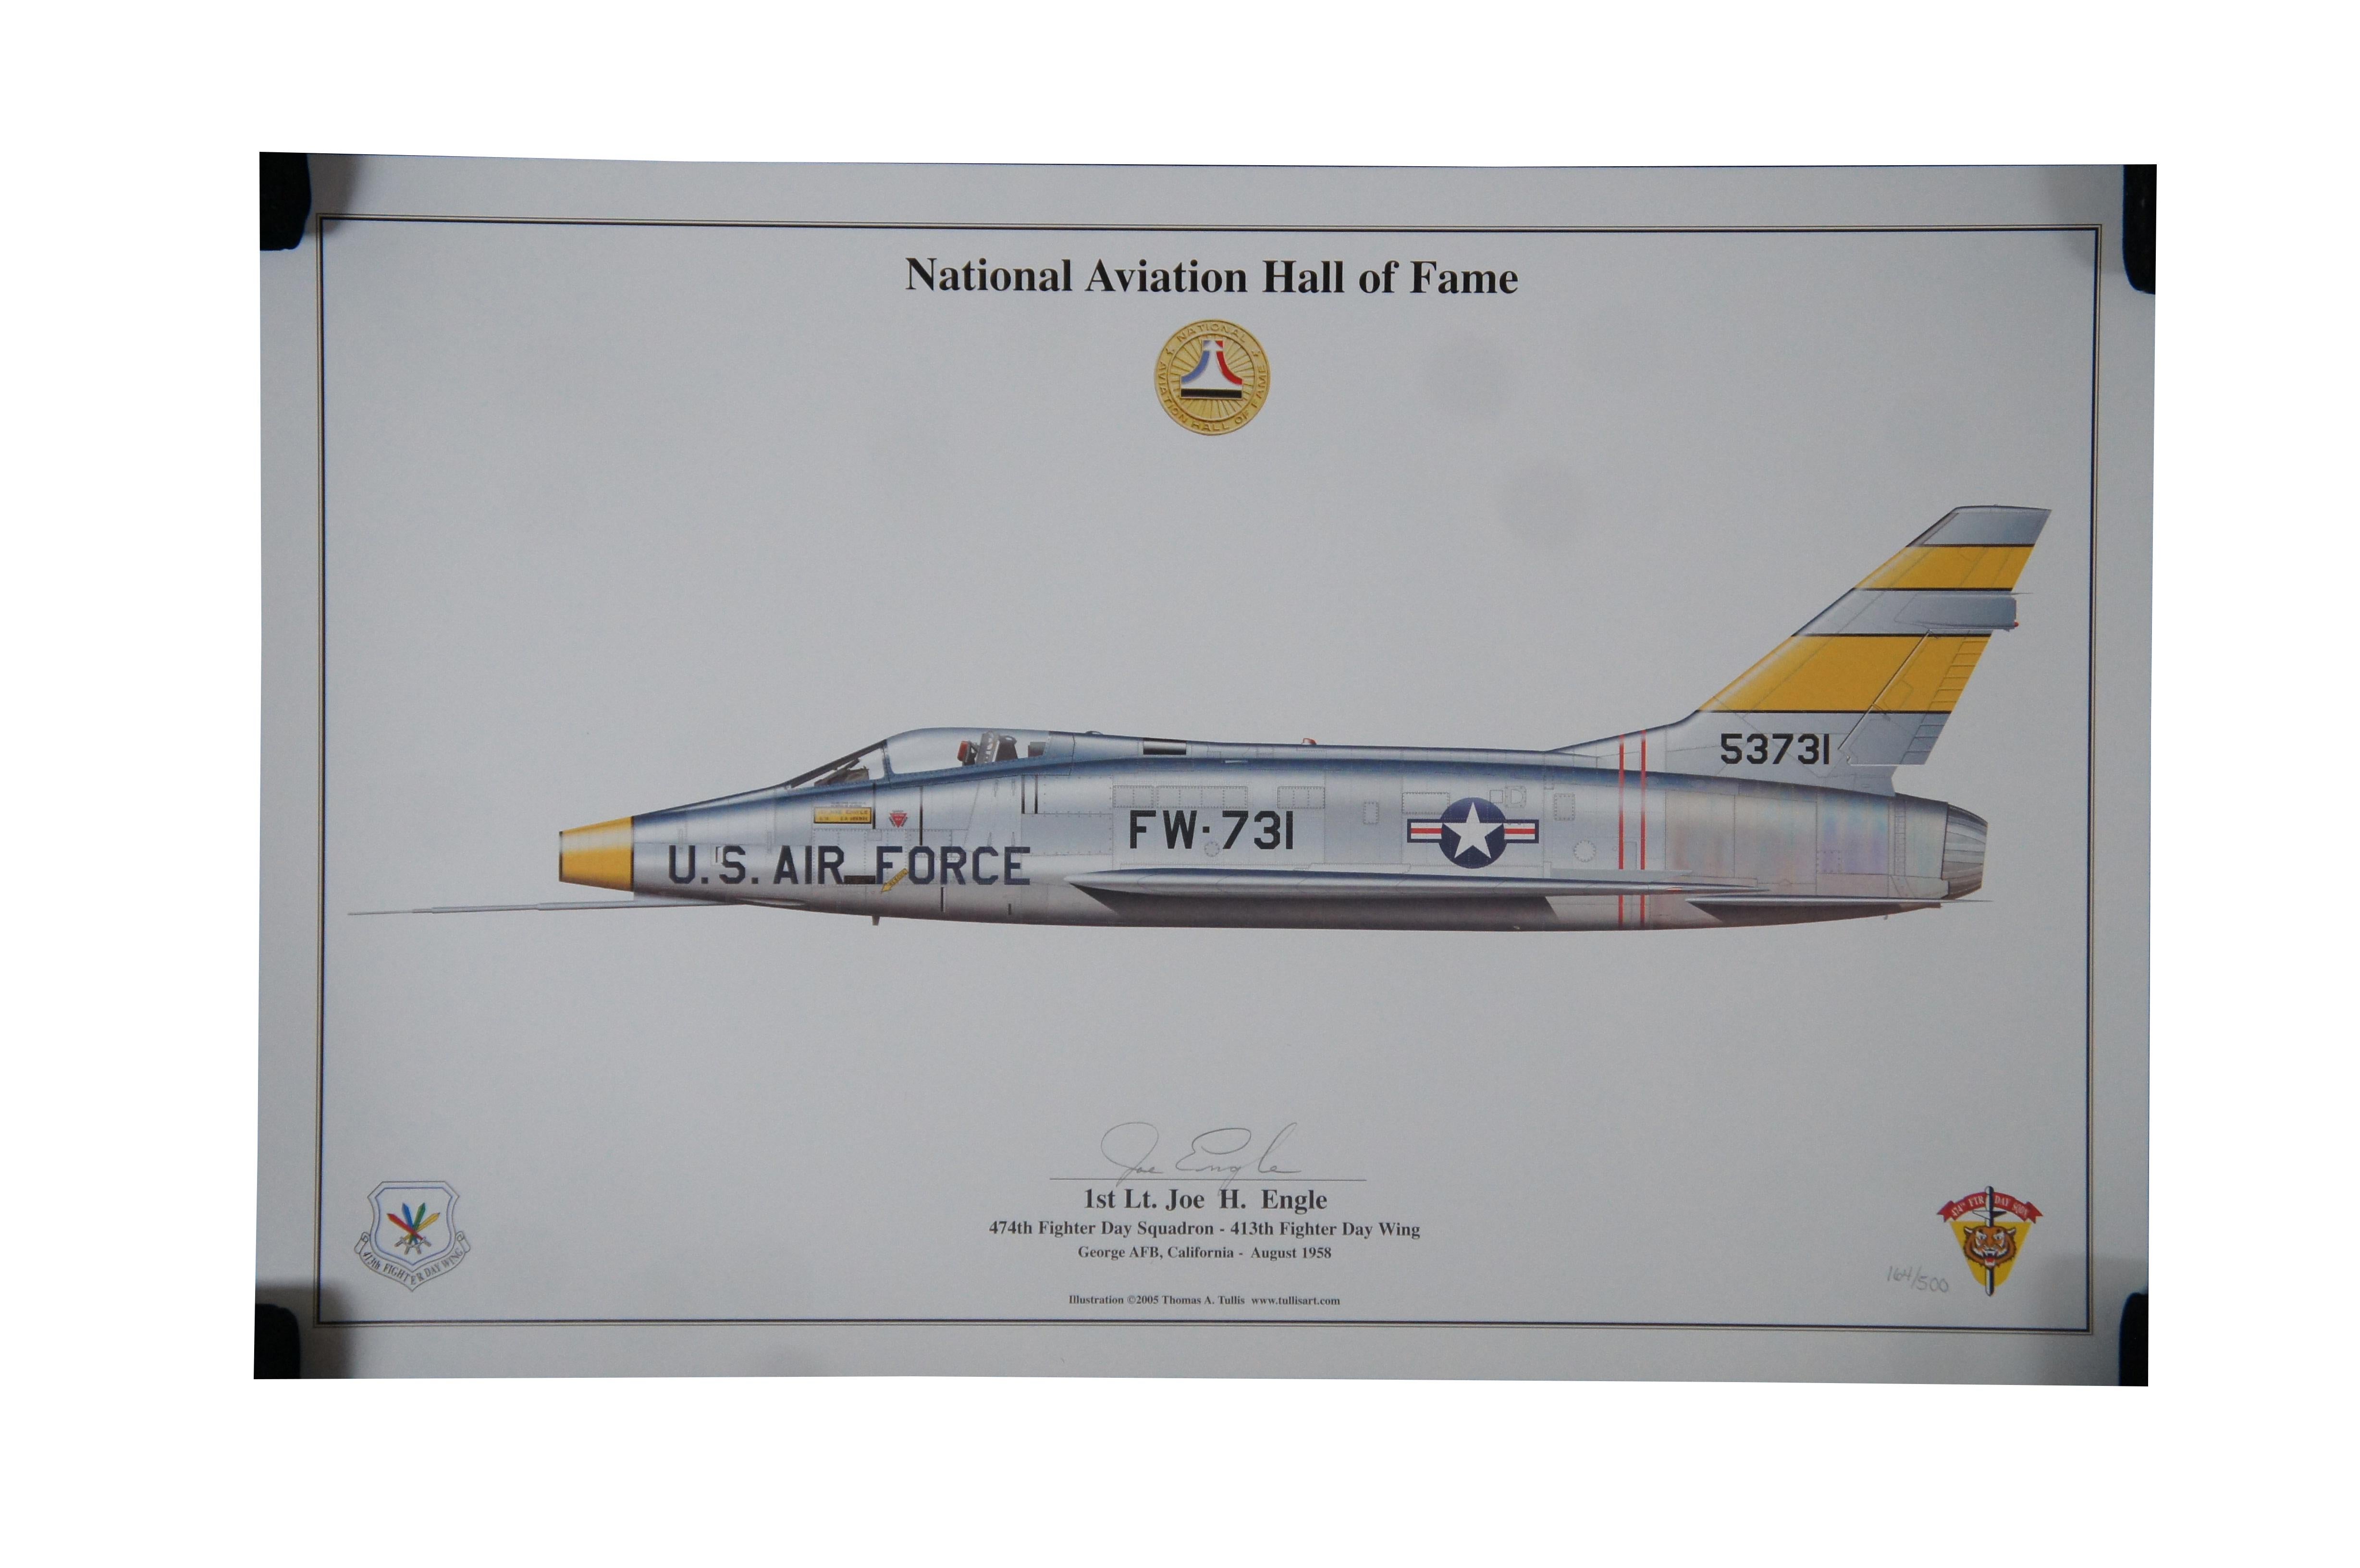 Deux affiches du National Aviation Hall of Fame signées par Thomas Tullis.  Comprend un FW 731 de l'armée de l'air américaine et la navette spatiale Columbia de la NASA.  Tous deux signés par Joe Engle.  

Dimensions : 
17